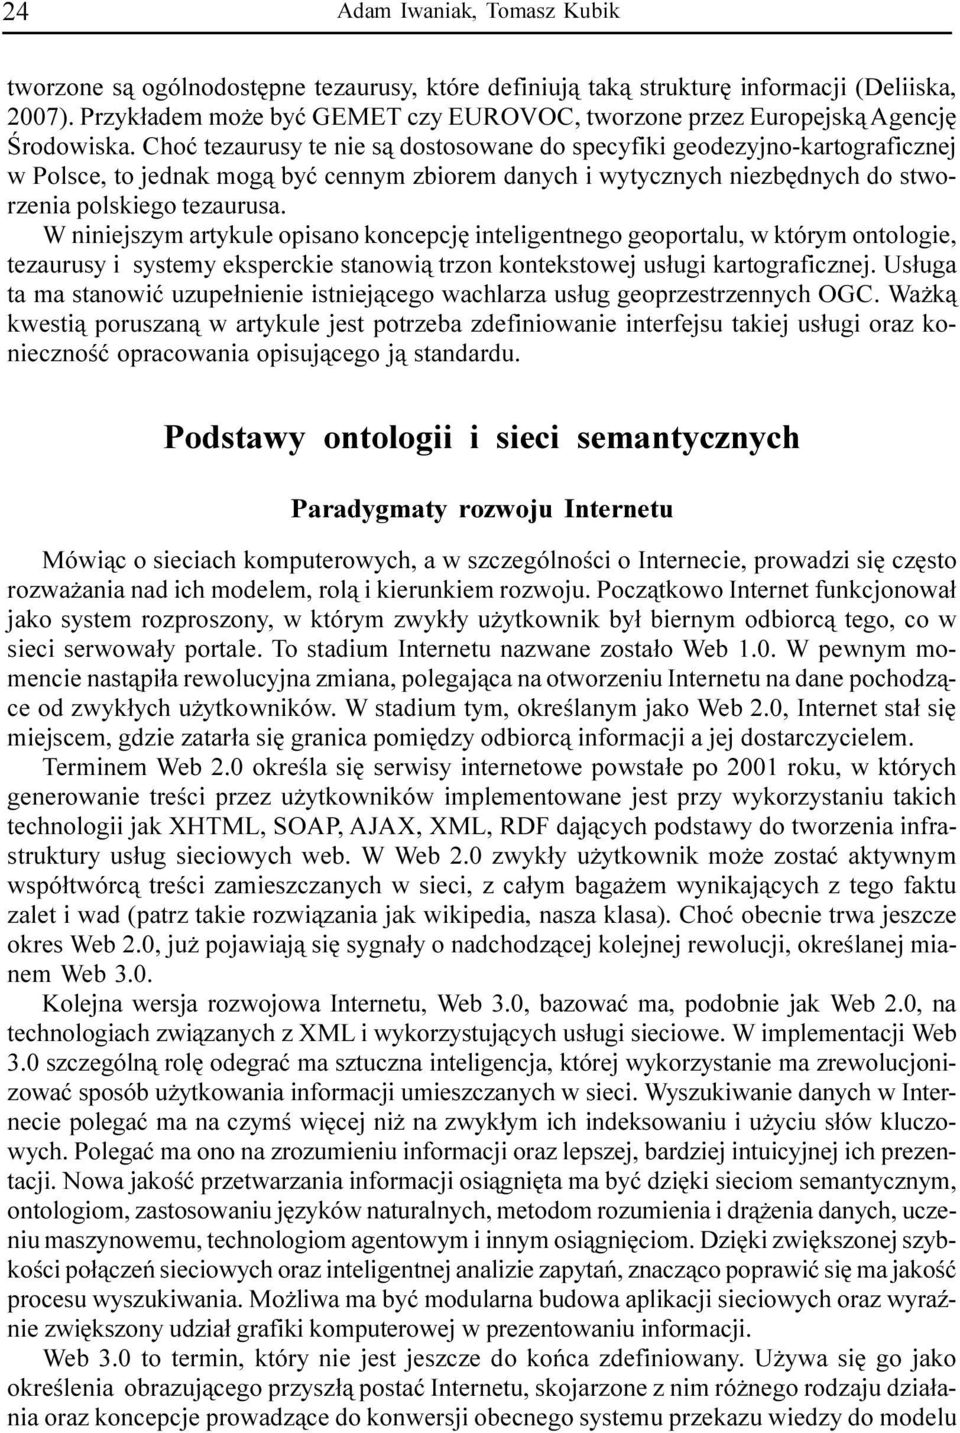 Choæ tezaurusy te nie s¹ dostosowane do specyfiki geodezyjno-kartograficznej w Polsce, to jednak mog¹ byæ cennym zbiorem danych i wytycznych niezbêdnych do stworzenia polskiego tezaurusa.